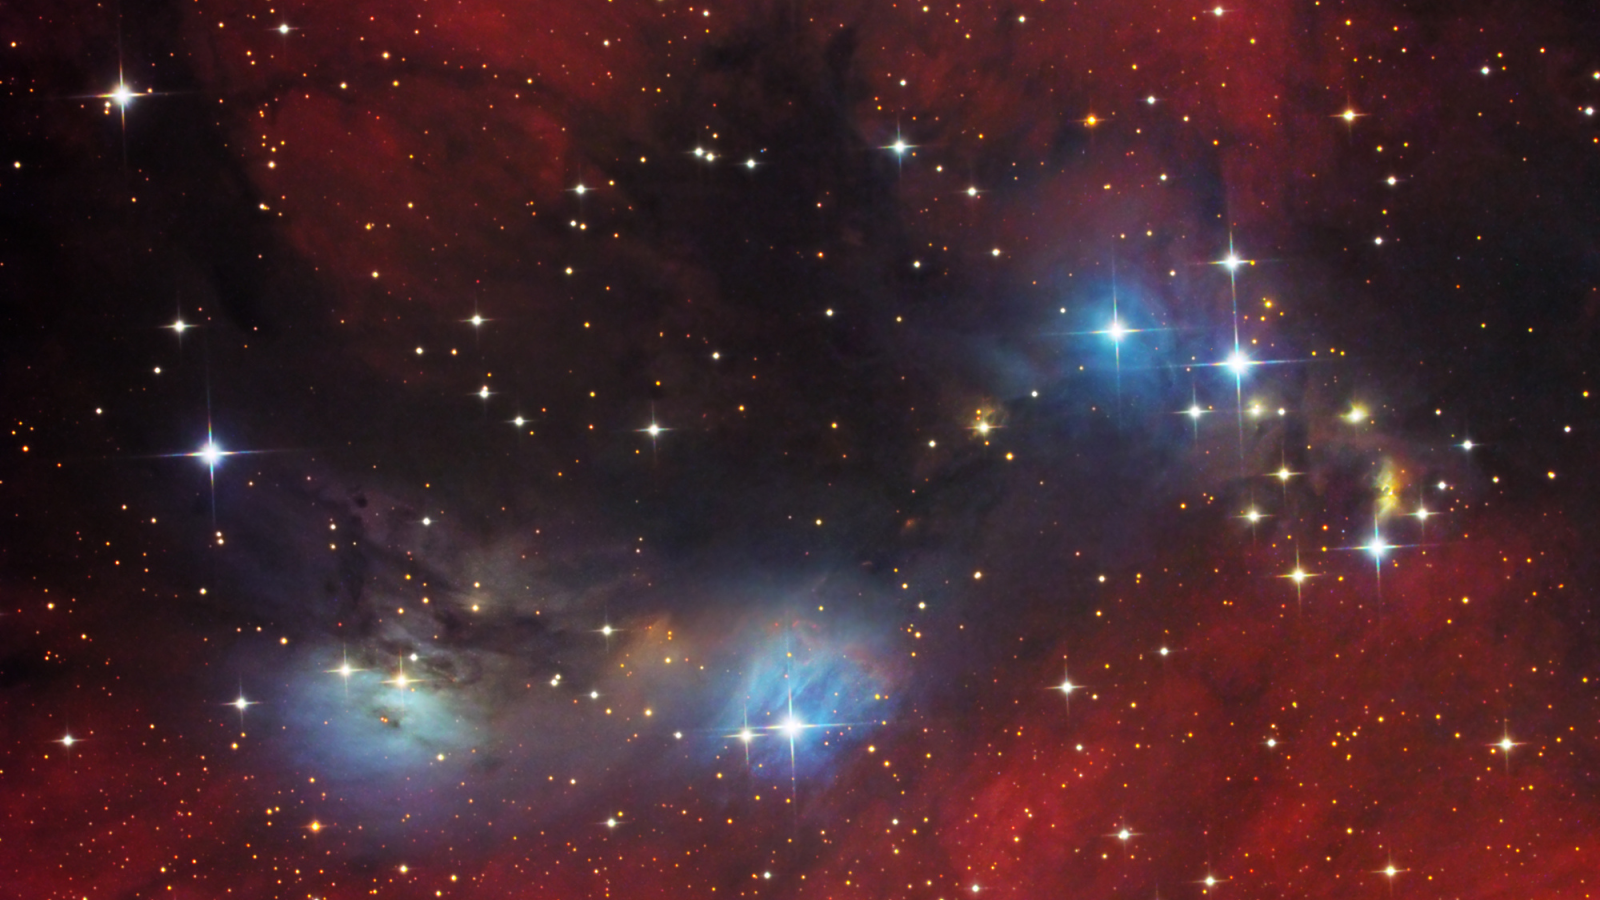 лебедь, nebula, vdb 132, Ngc 6914, космос, туманность